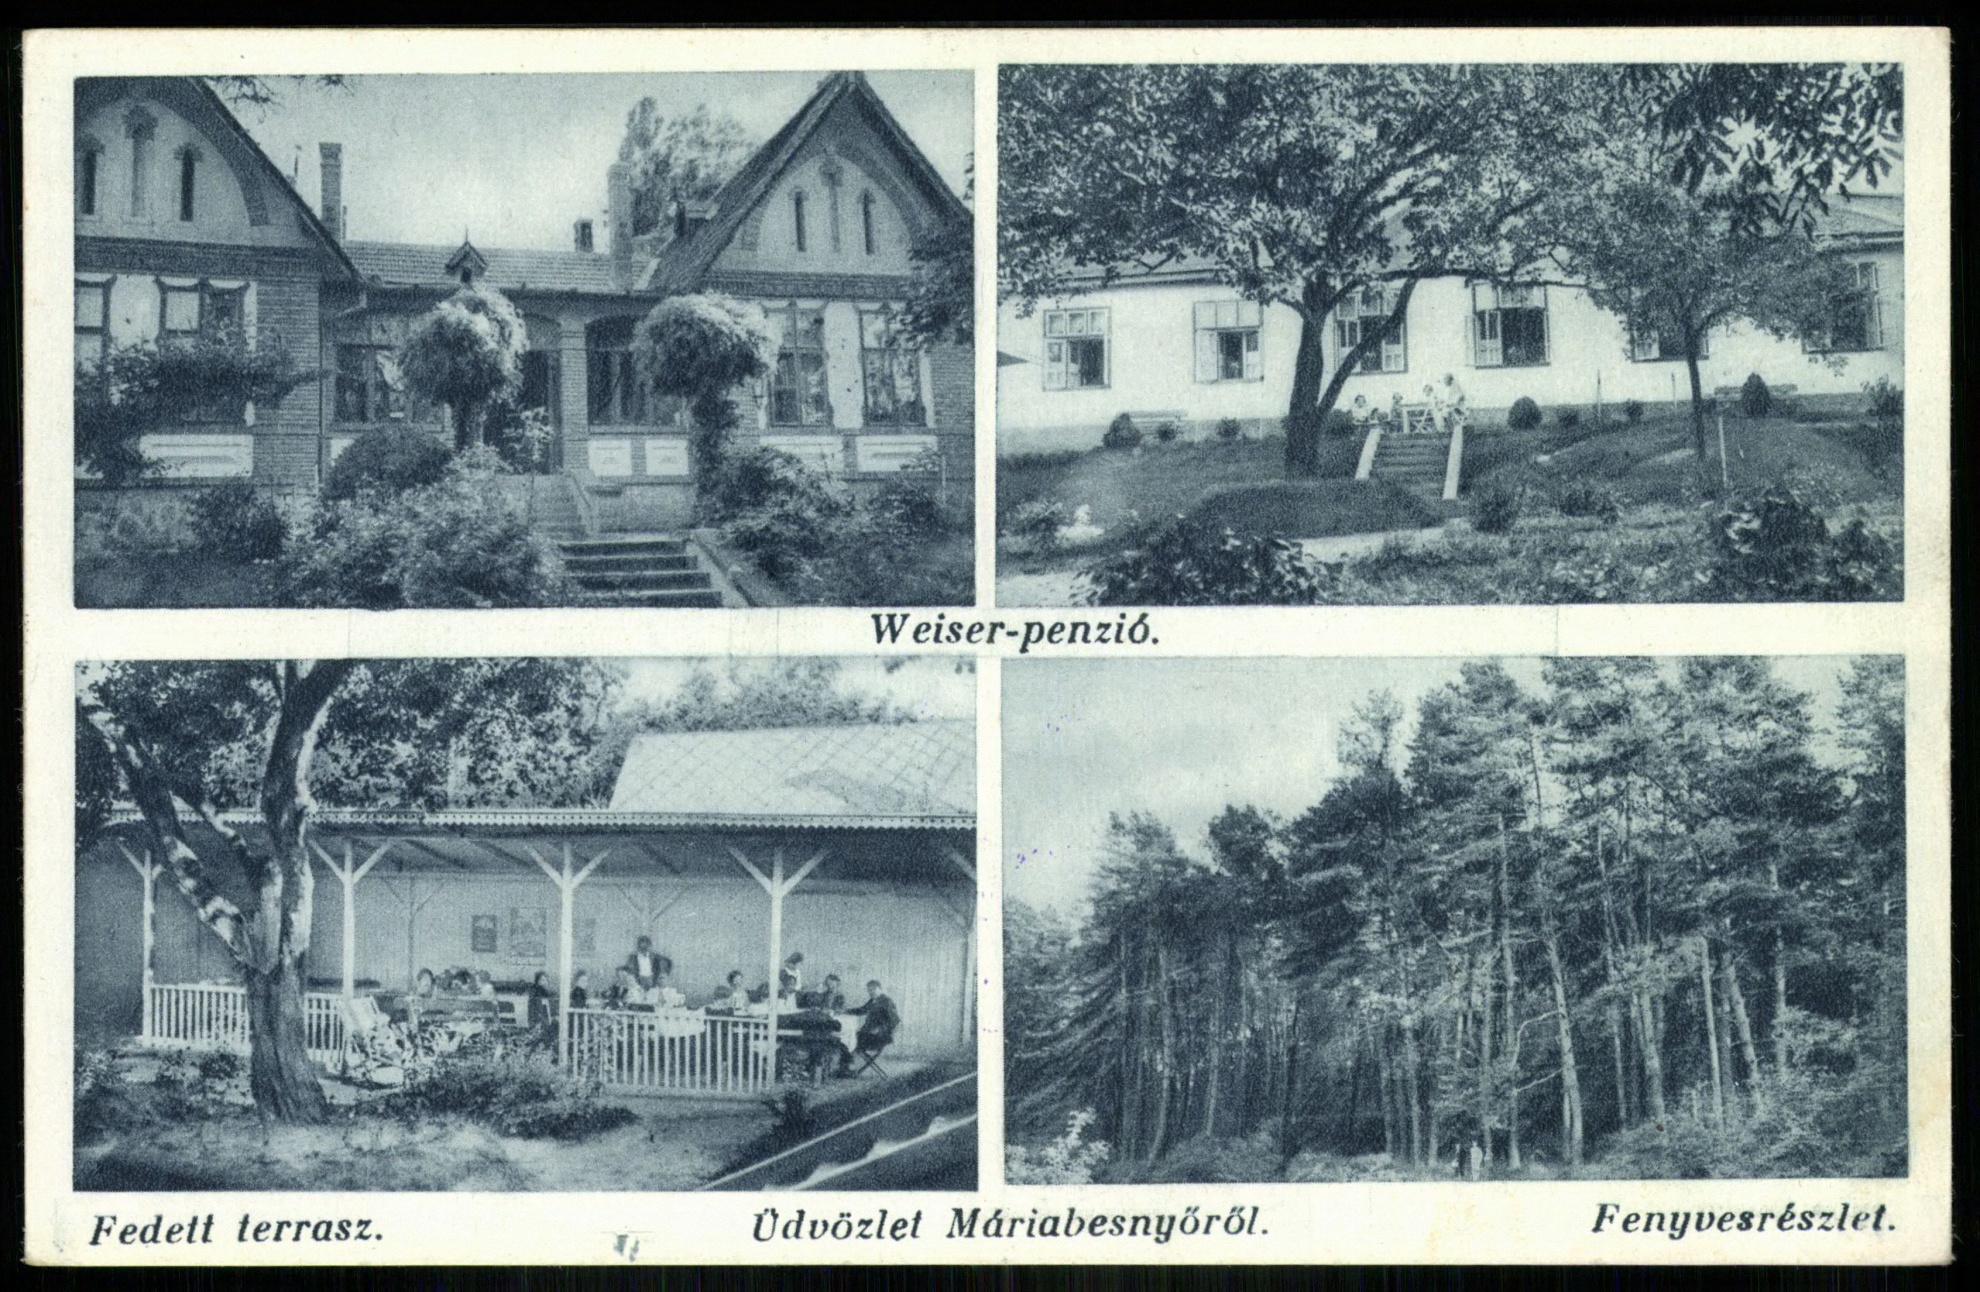 Máriabesnyő Weiser-penzió, Fedett terasz, Fenyvesrészlet (Magyar Kereskedelmi és Vendéglátóipari Múzeum CC BY-NC-ND)